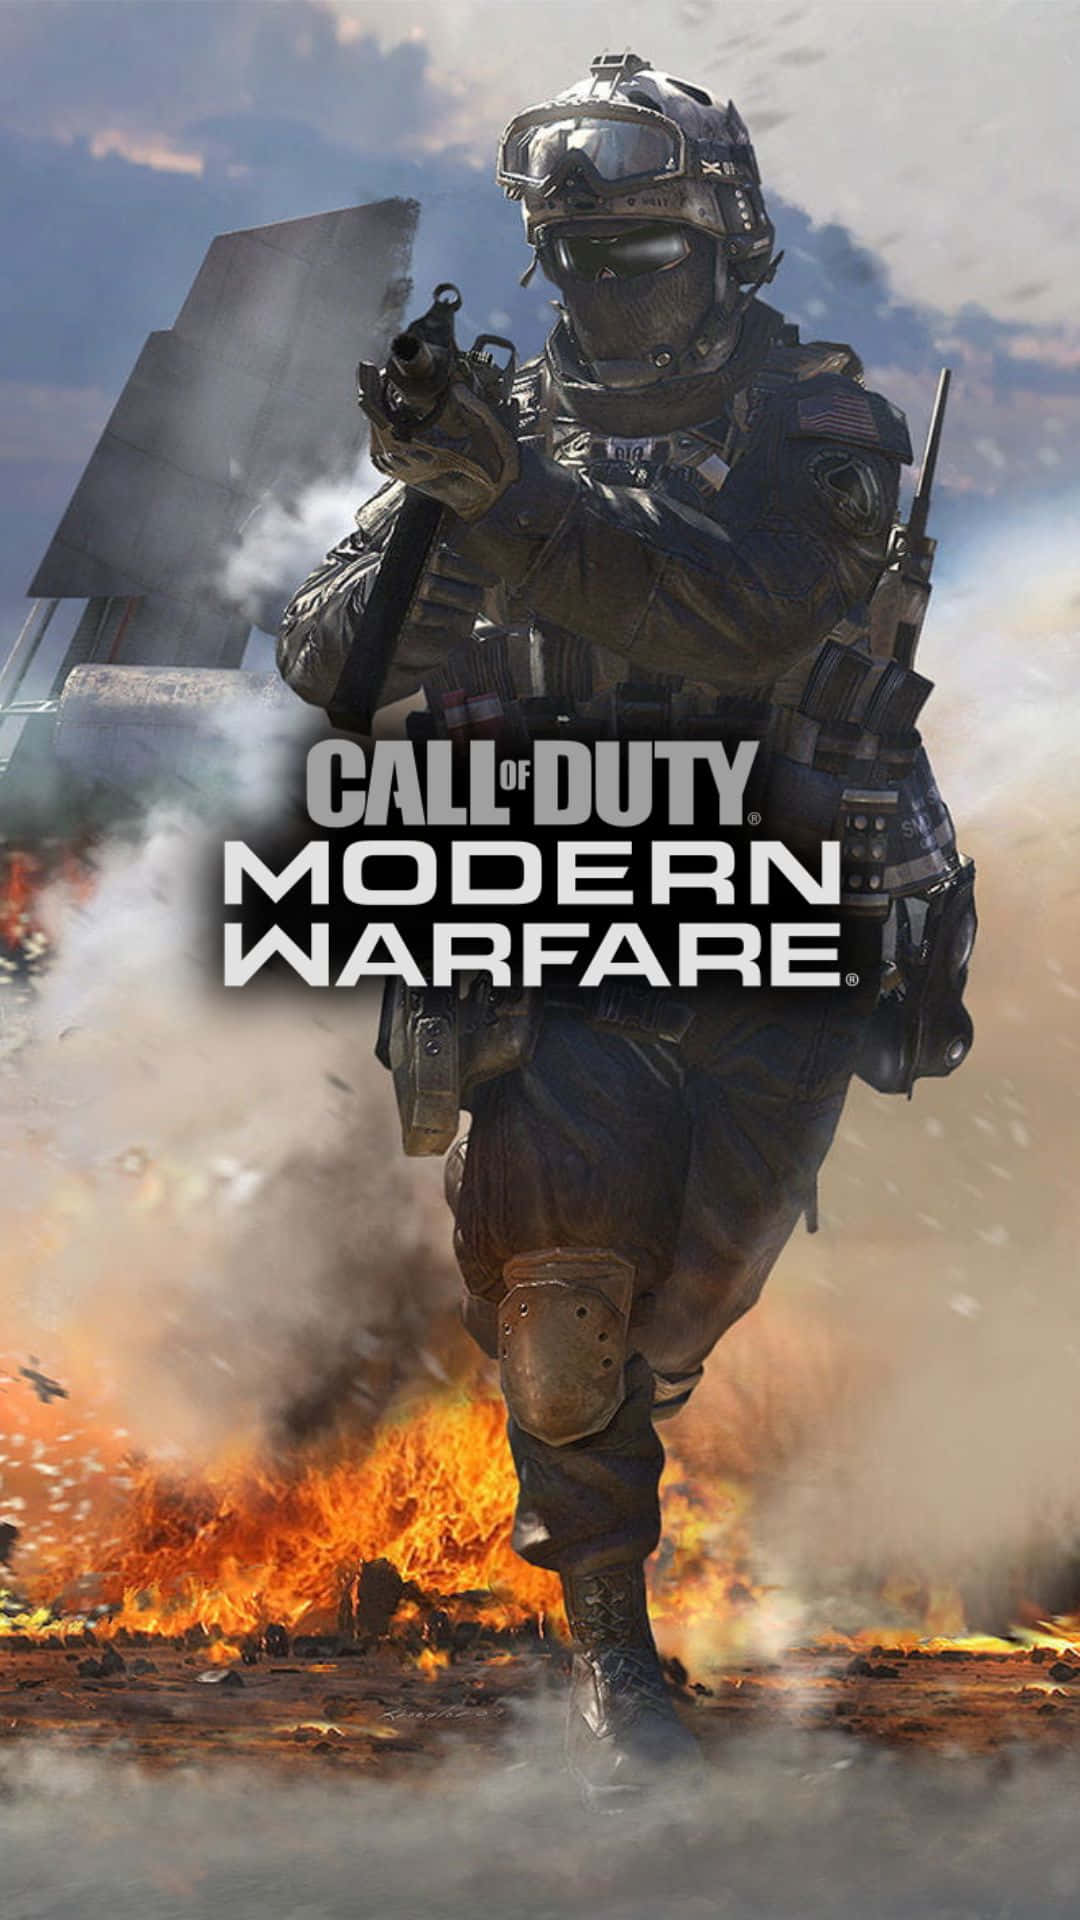 Combattisul Campo Di Battaglia Con Android Call Of Duty Modern Warfare